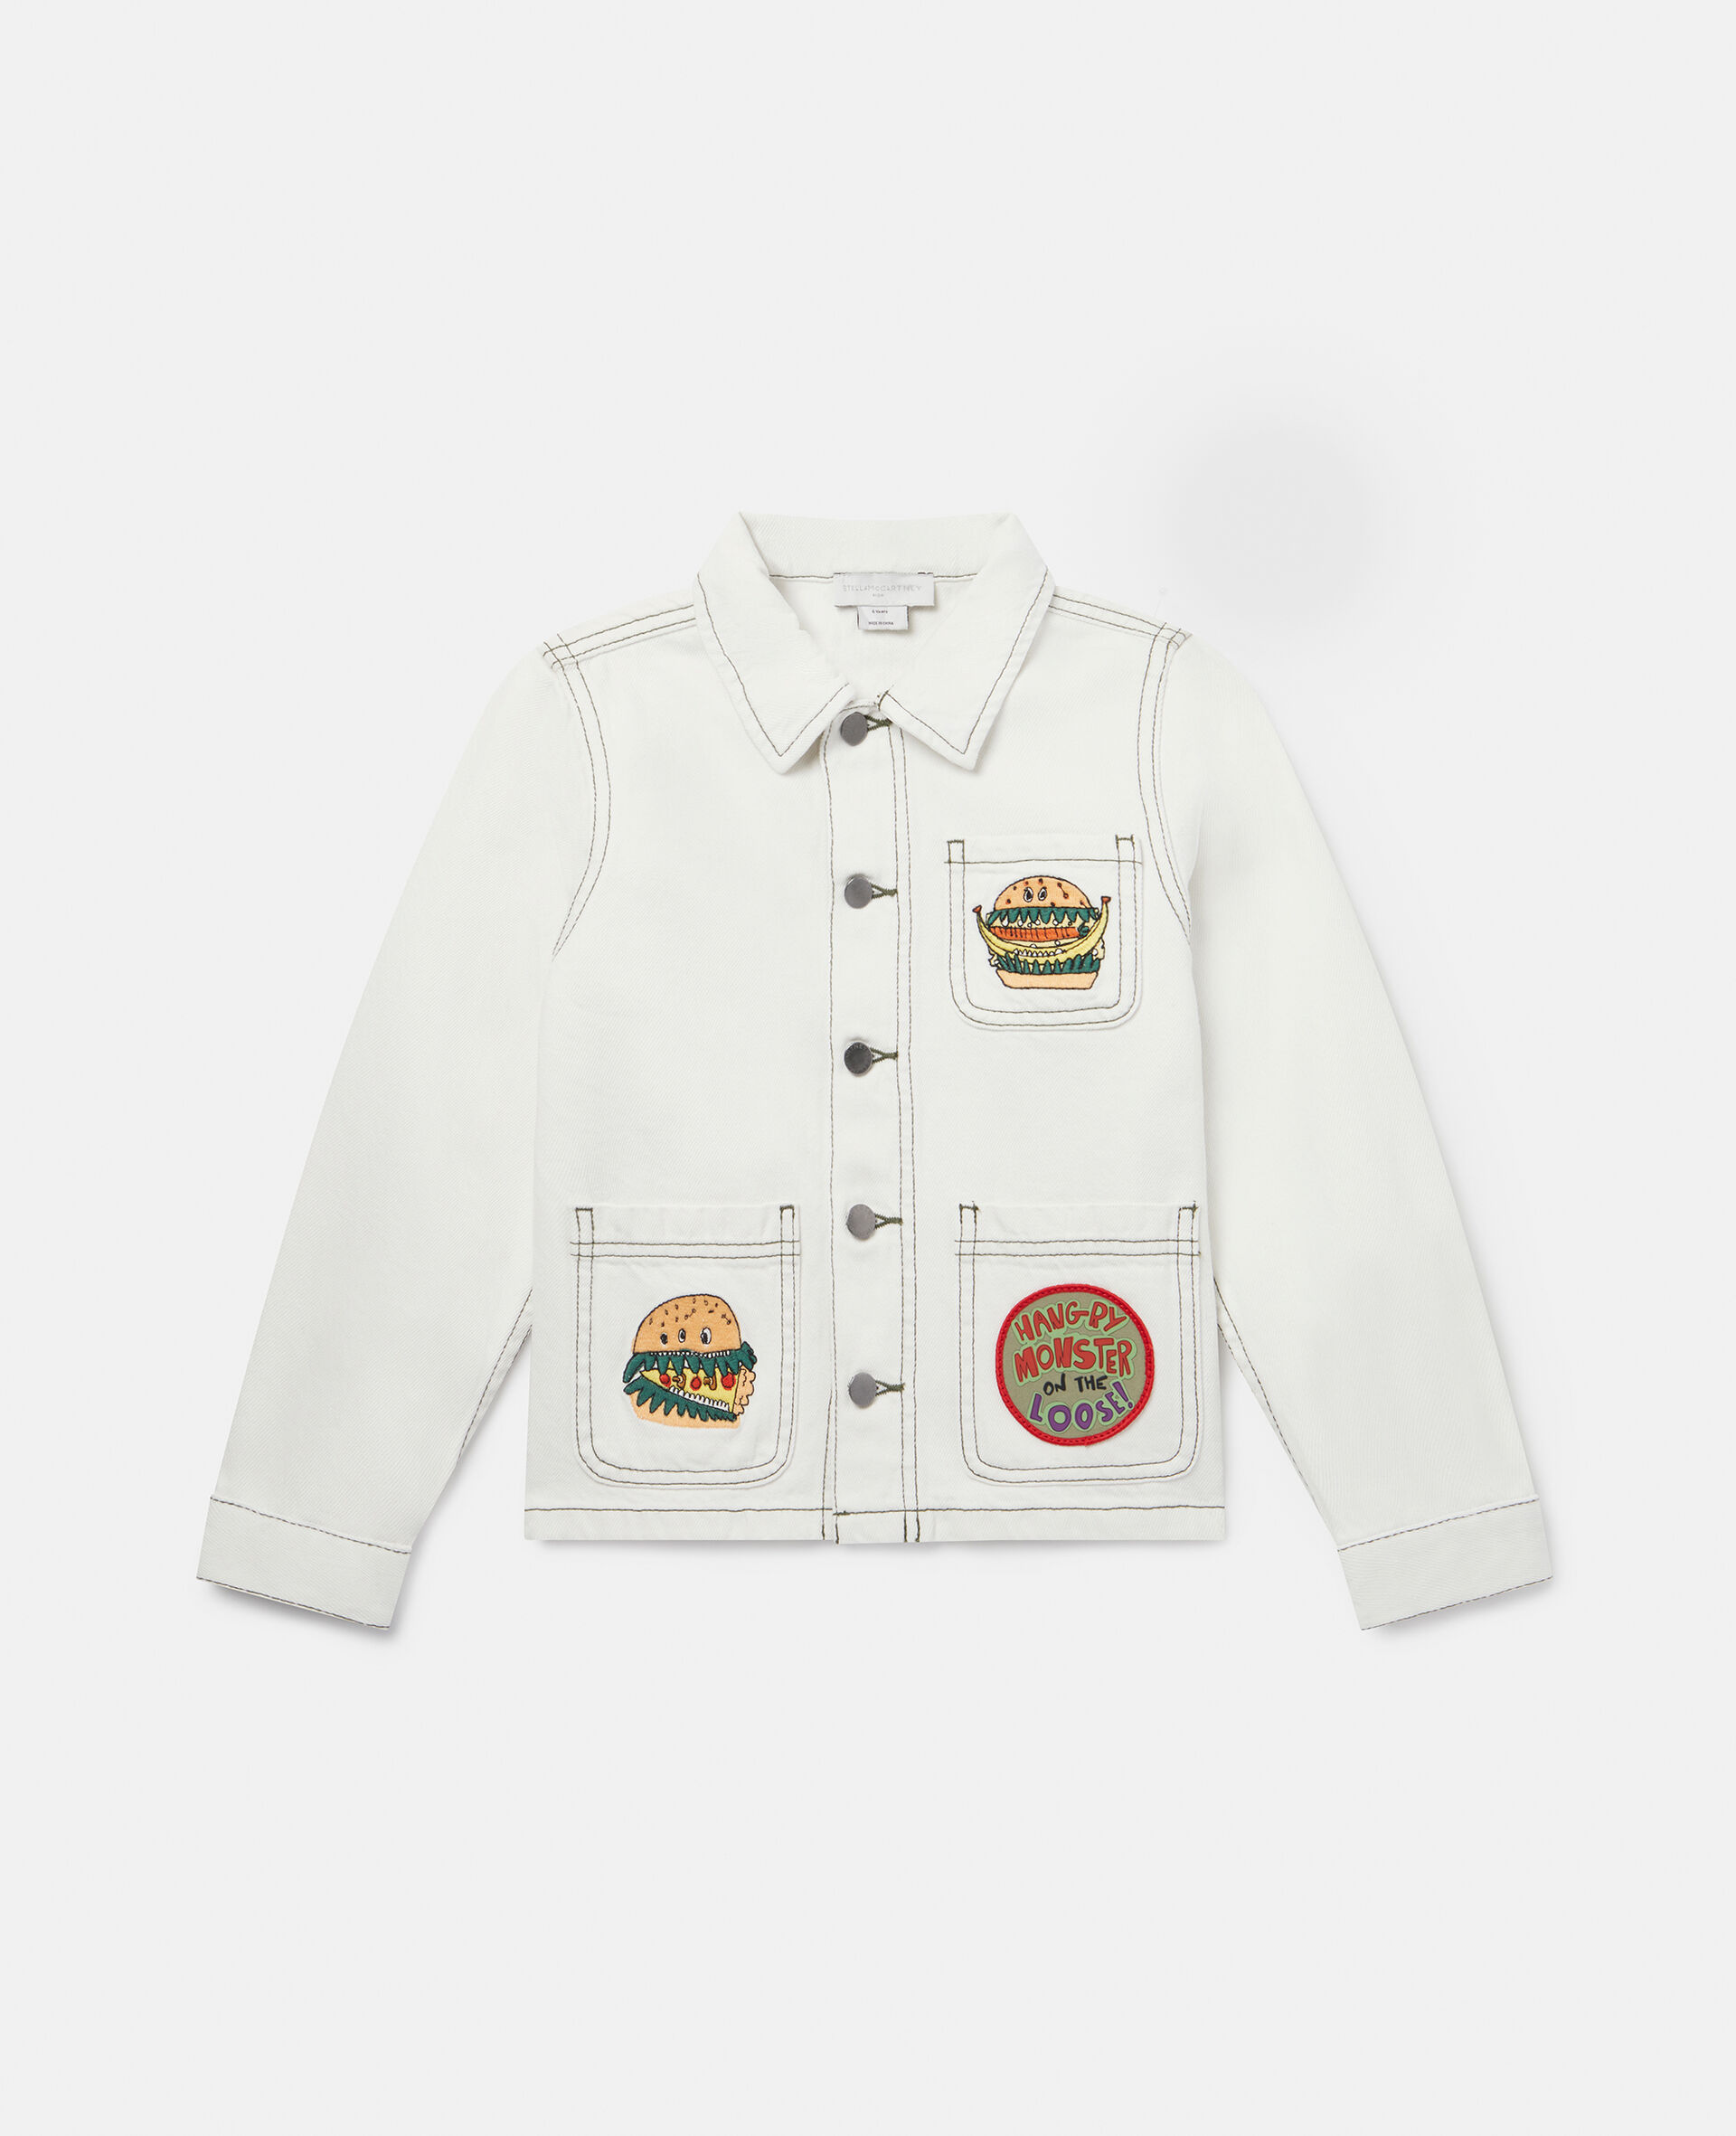 Jeansjacke mit Silly Sandwich Motiv-Weiß-medium